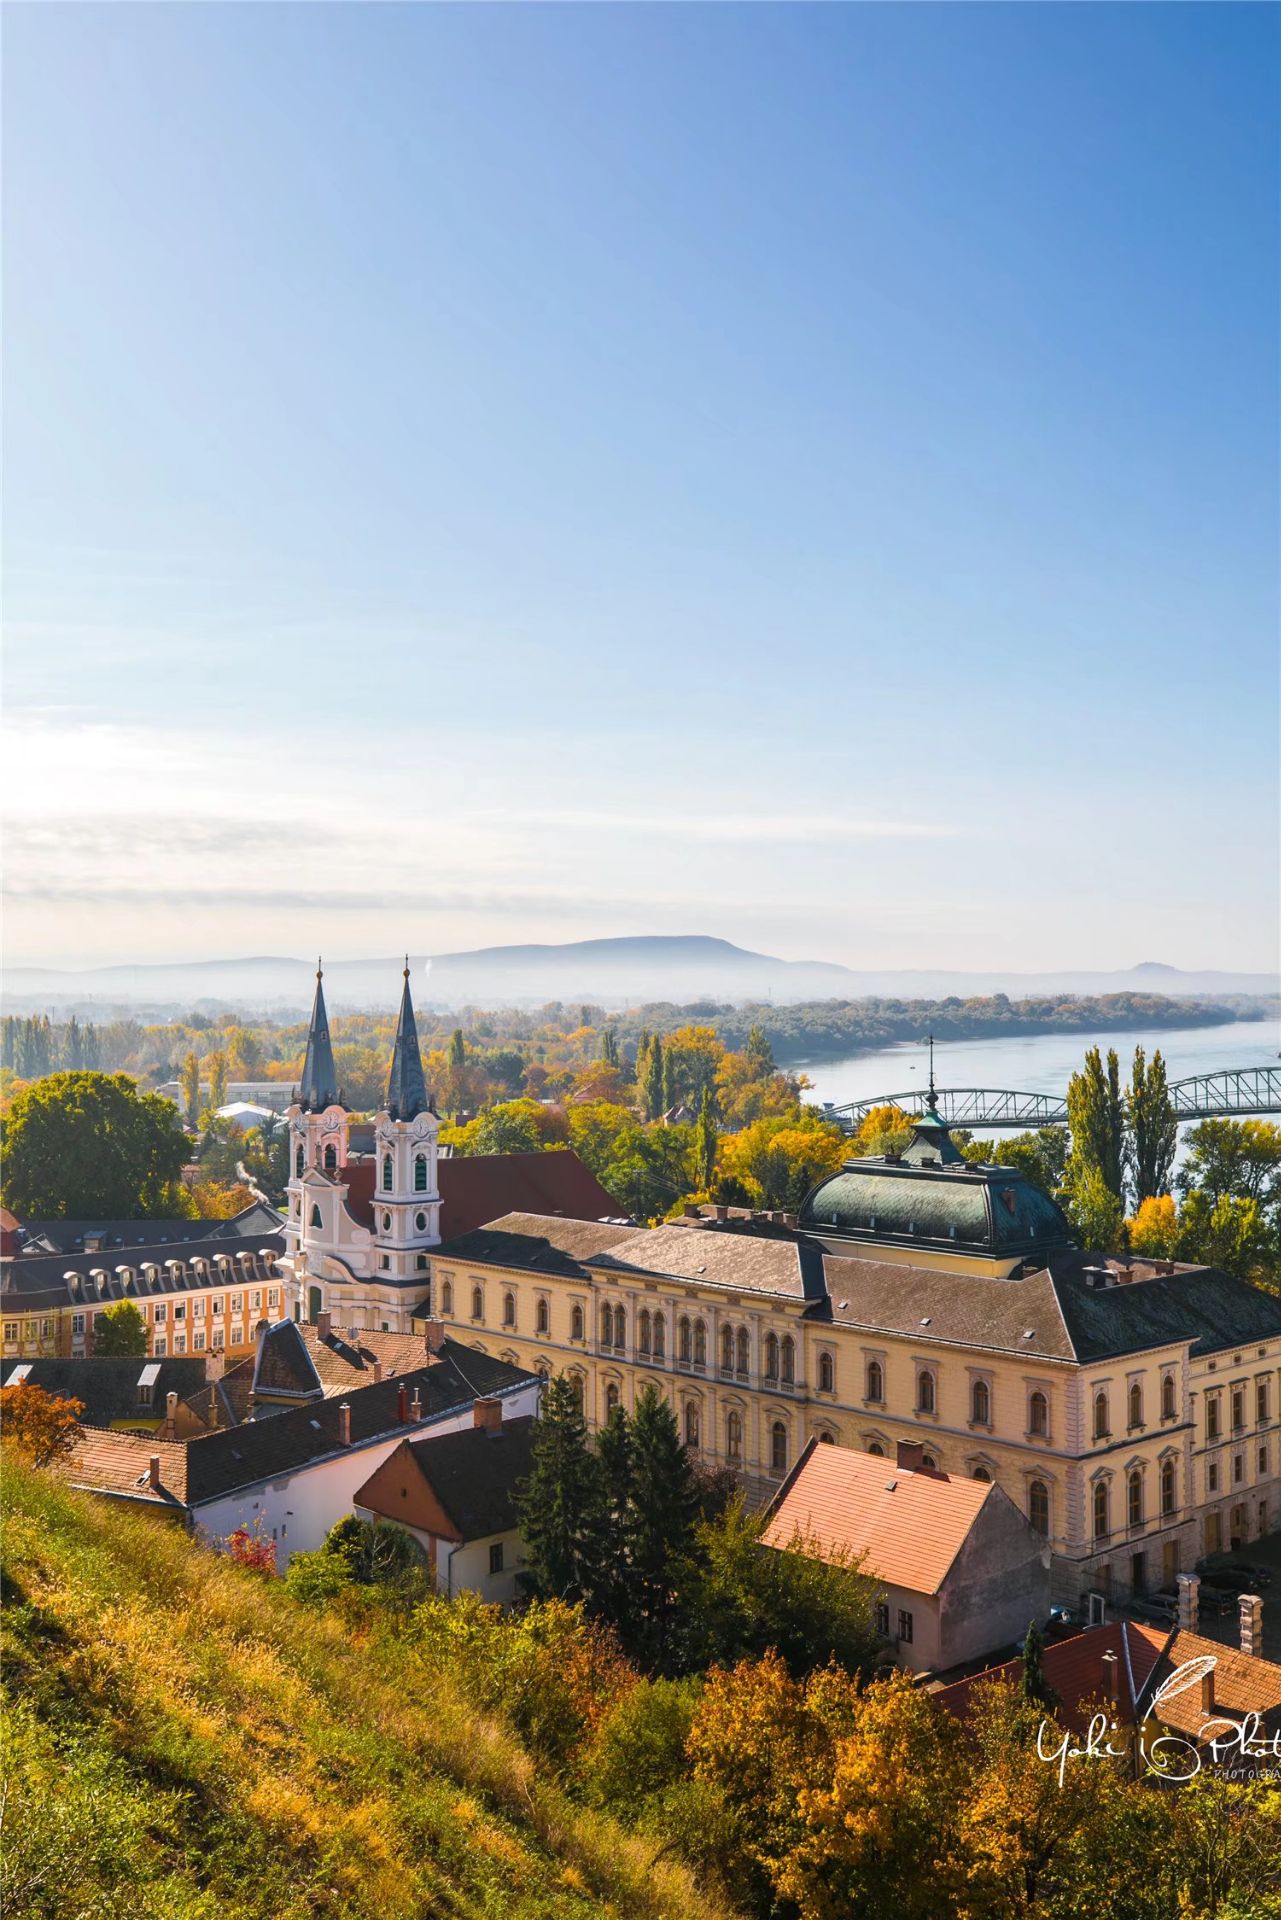 与斯洛伐克相望的匈牙利名城埃斯泰尔戈姆  多瑙河 孕育了许多如珍珠般美丽的小镇大城，埃斯泰尔戈姆便是